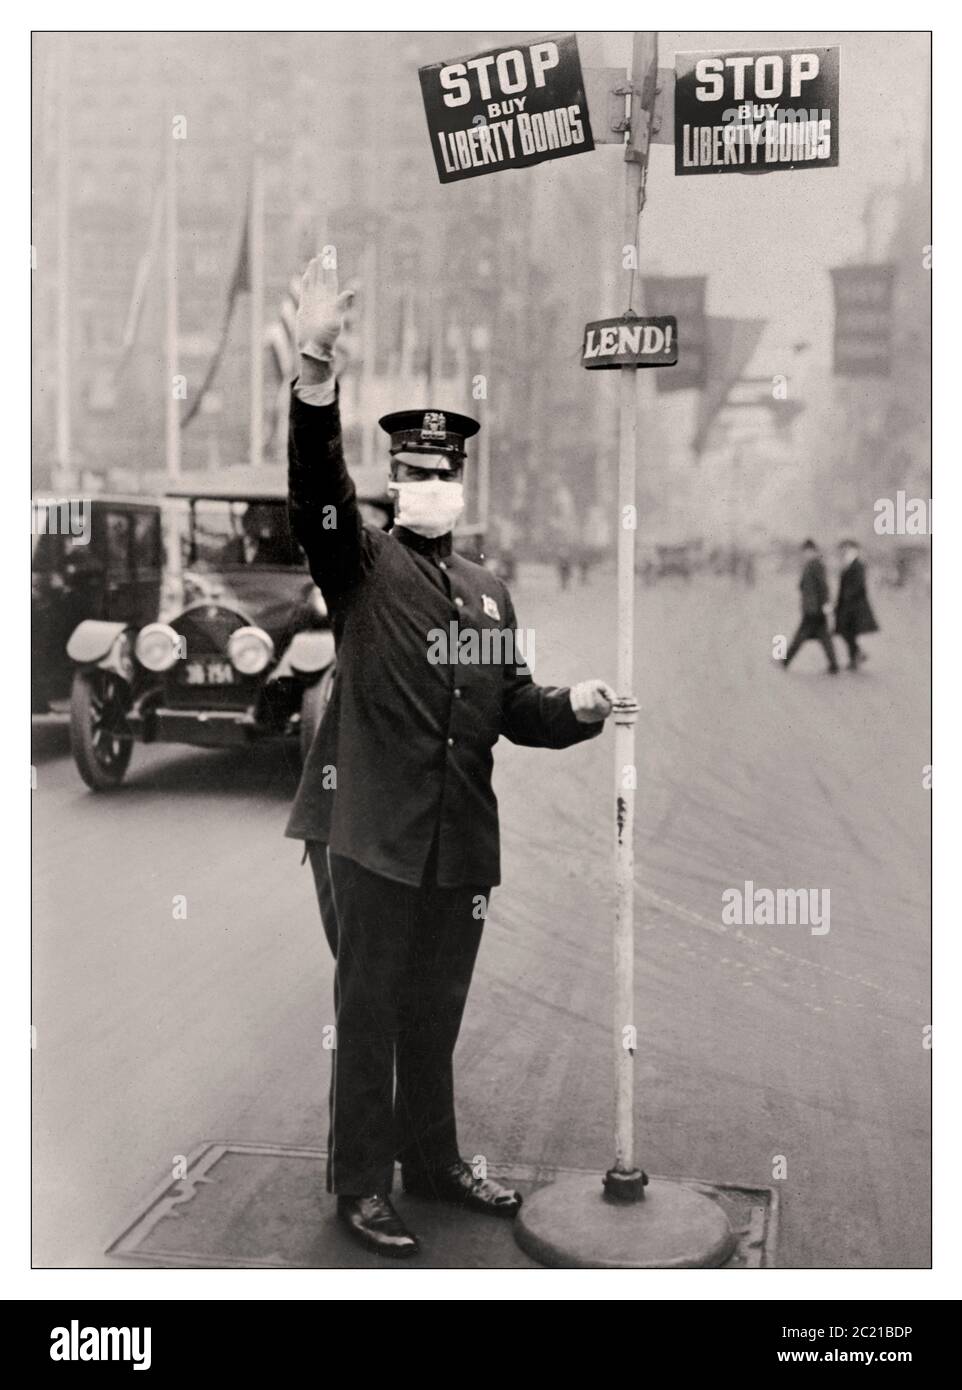 Spanische Grippe 1918 Maske amerikanischer Verkehrspolizist in New York City trägt eine Anti-Grippe-Gaze-Maske. 1918 spanische Grippe-Pandemie, mit dem ersten Weltkrieg Zeichen oben drängen Kauf von Liberty Bonds New York USA Stockfoto